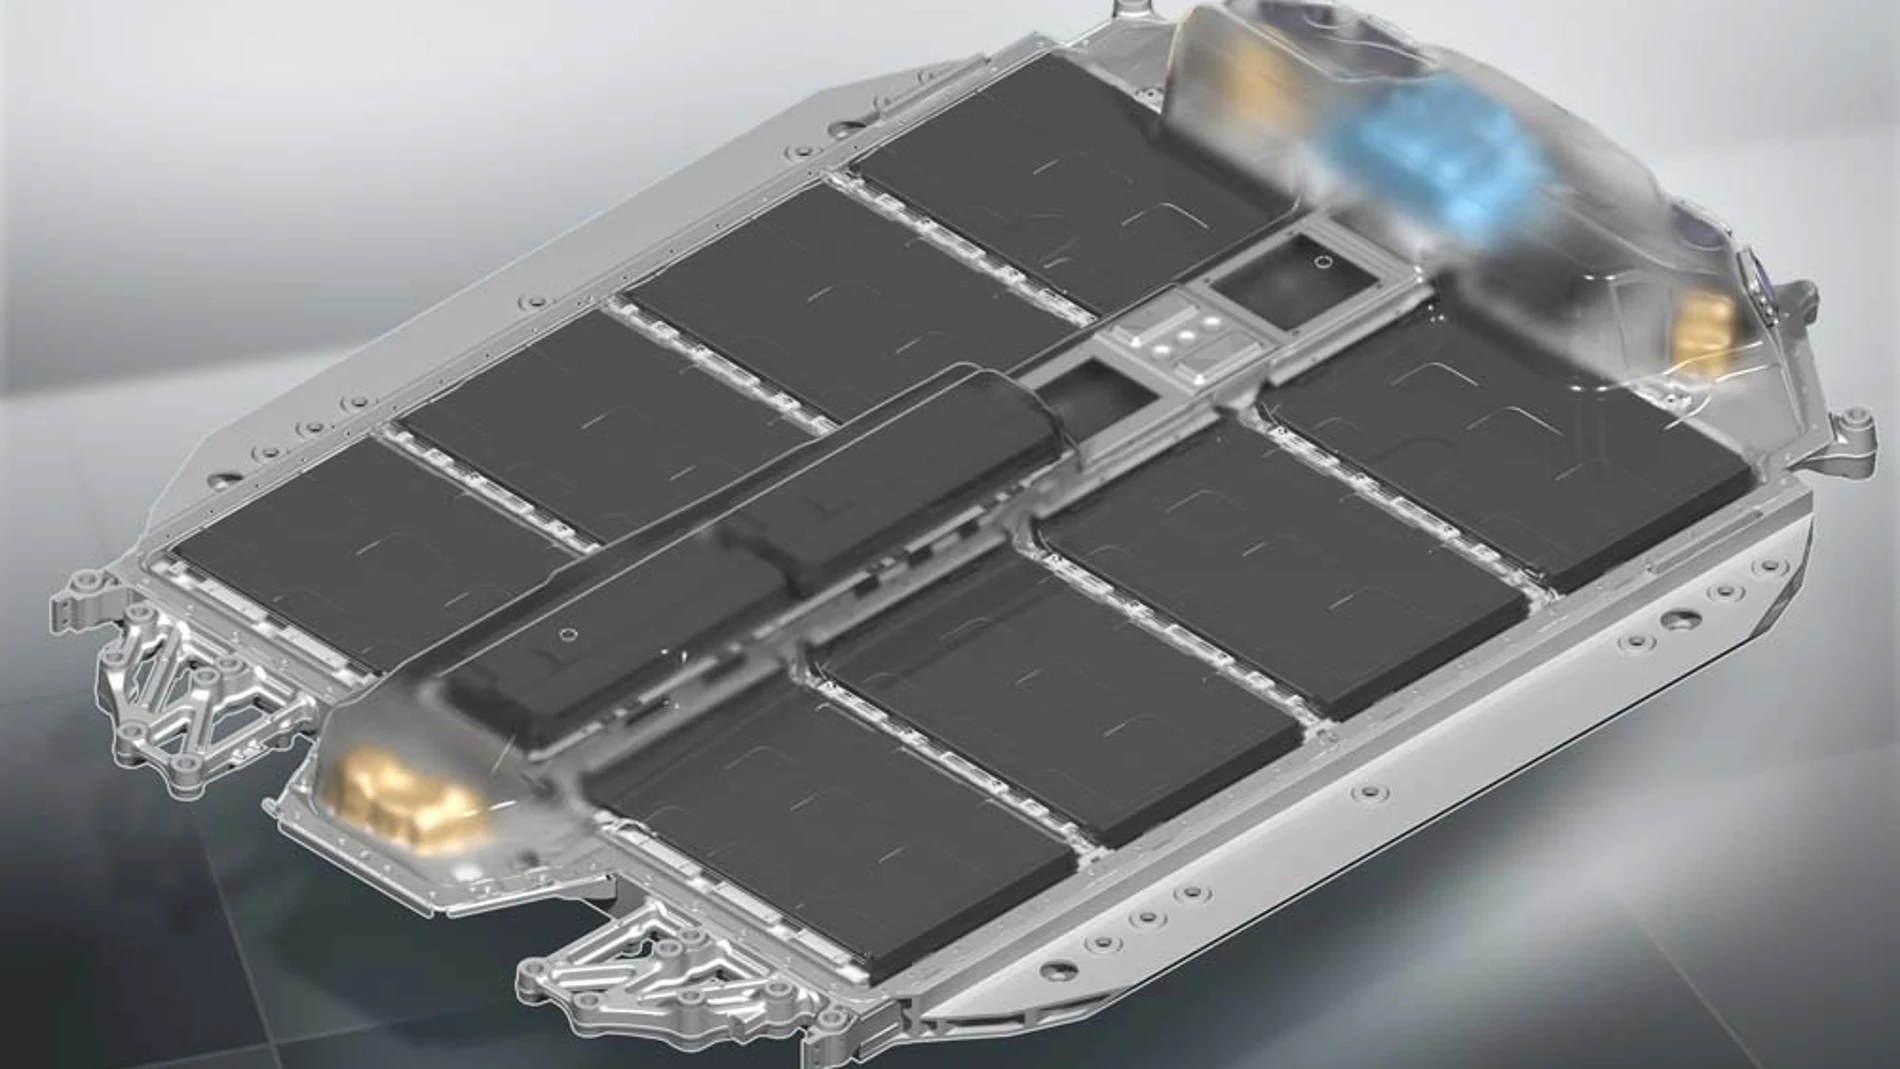 La demanda de baterías para los vehículos eléctricos crecerá de forma rápida en la próxima década. BMW ya prepara su quinta generación de tren de transmisión eléctrica junto a Samsung.